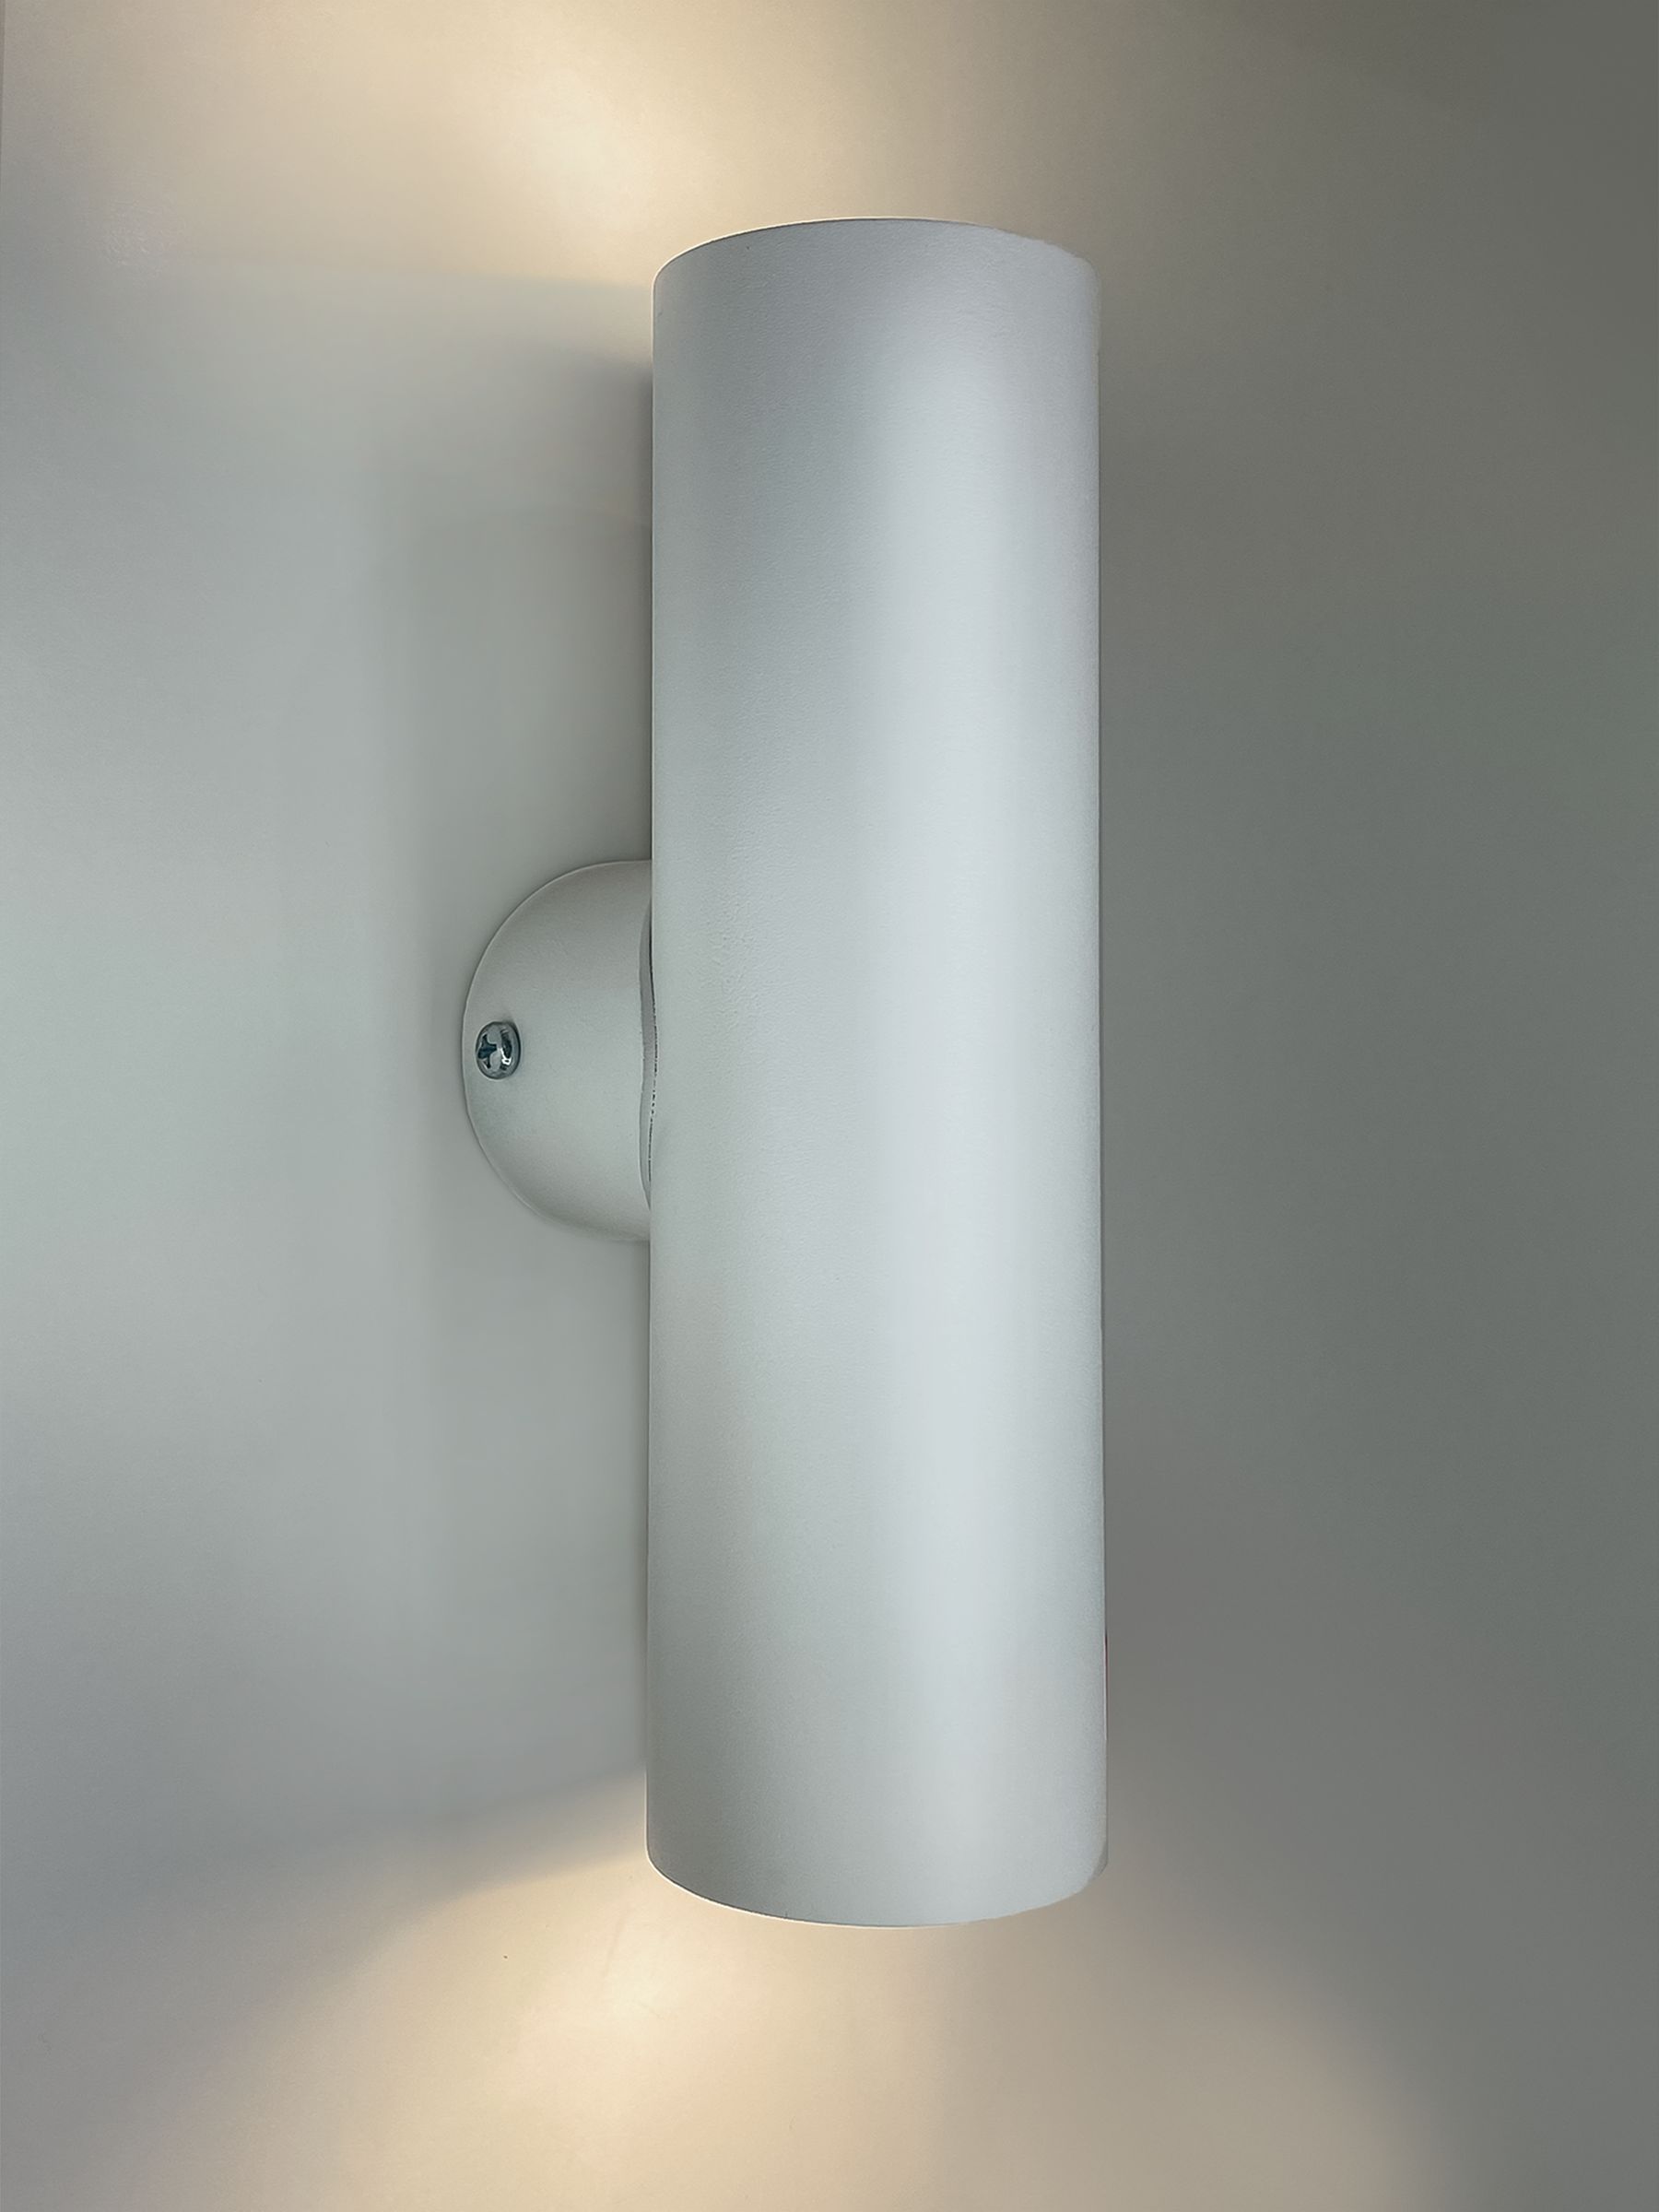 Интерьерный настенный точечный светильник Комлед INTERIOR TWIN R S, белый